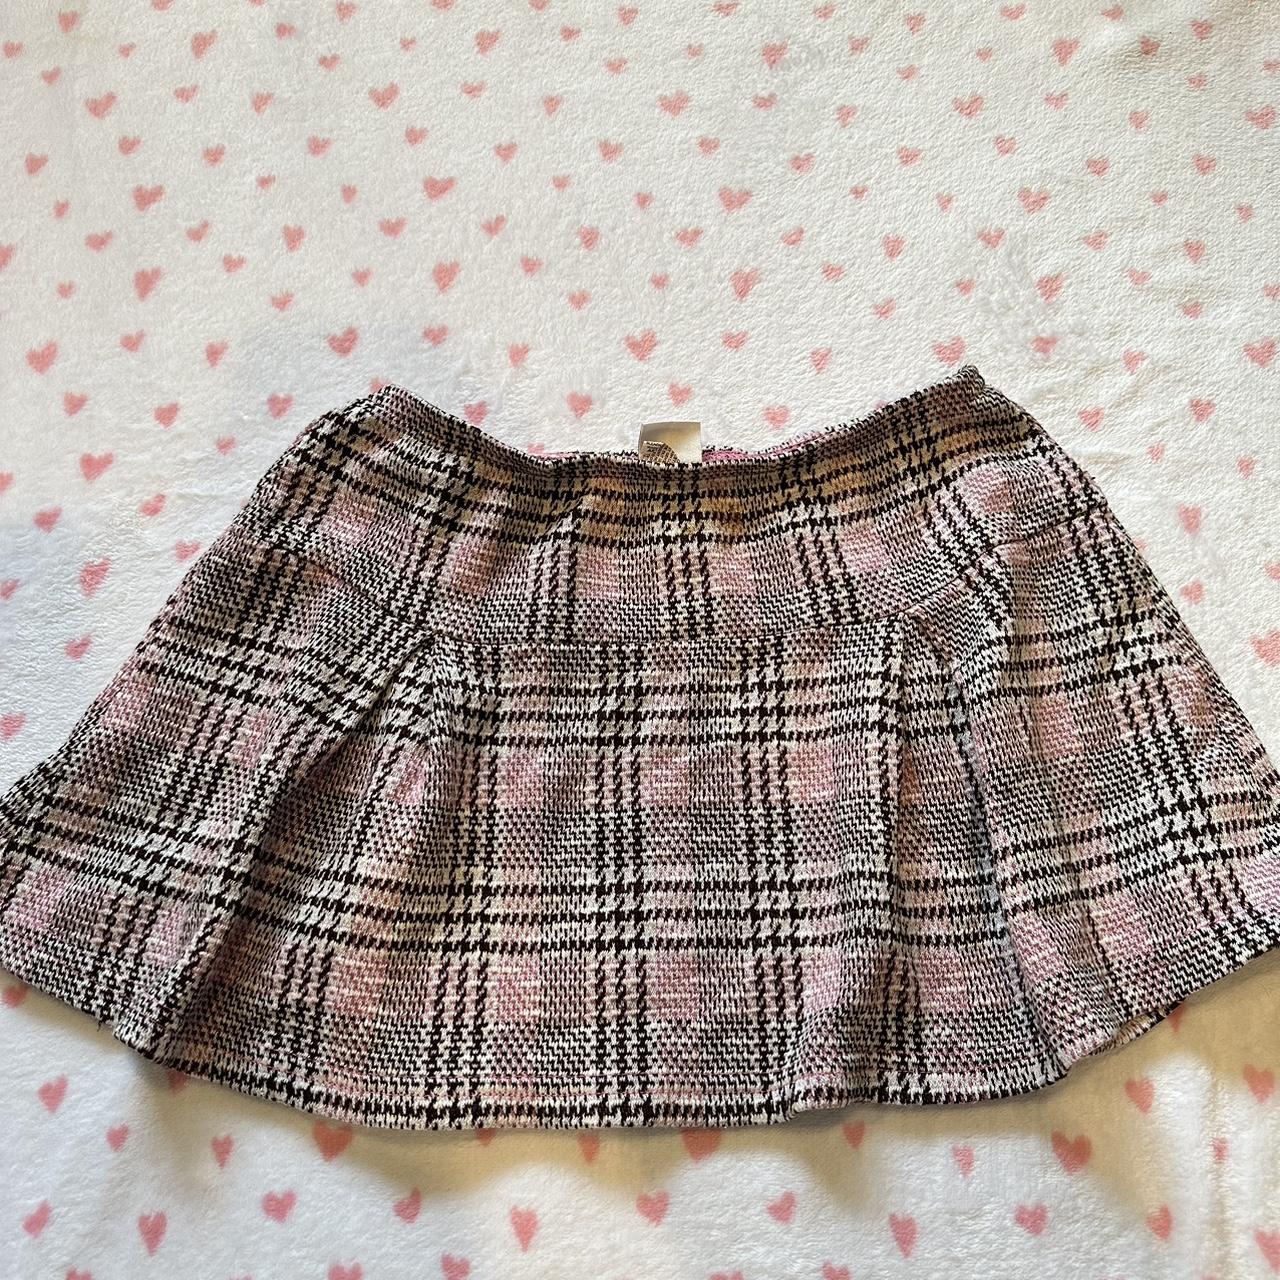 Low waist pink plaid mini skirt Best fit... - Depop